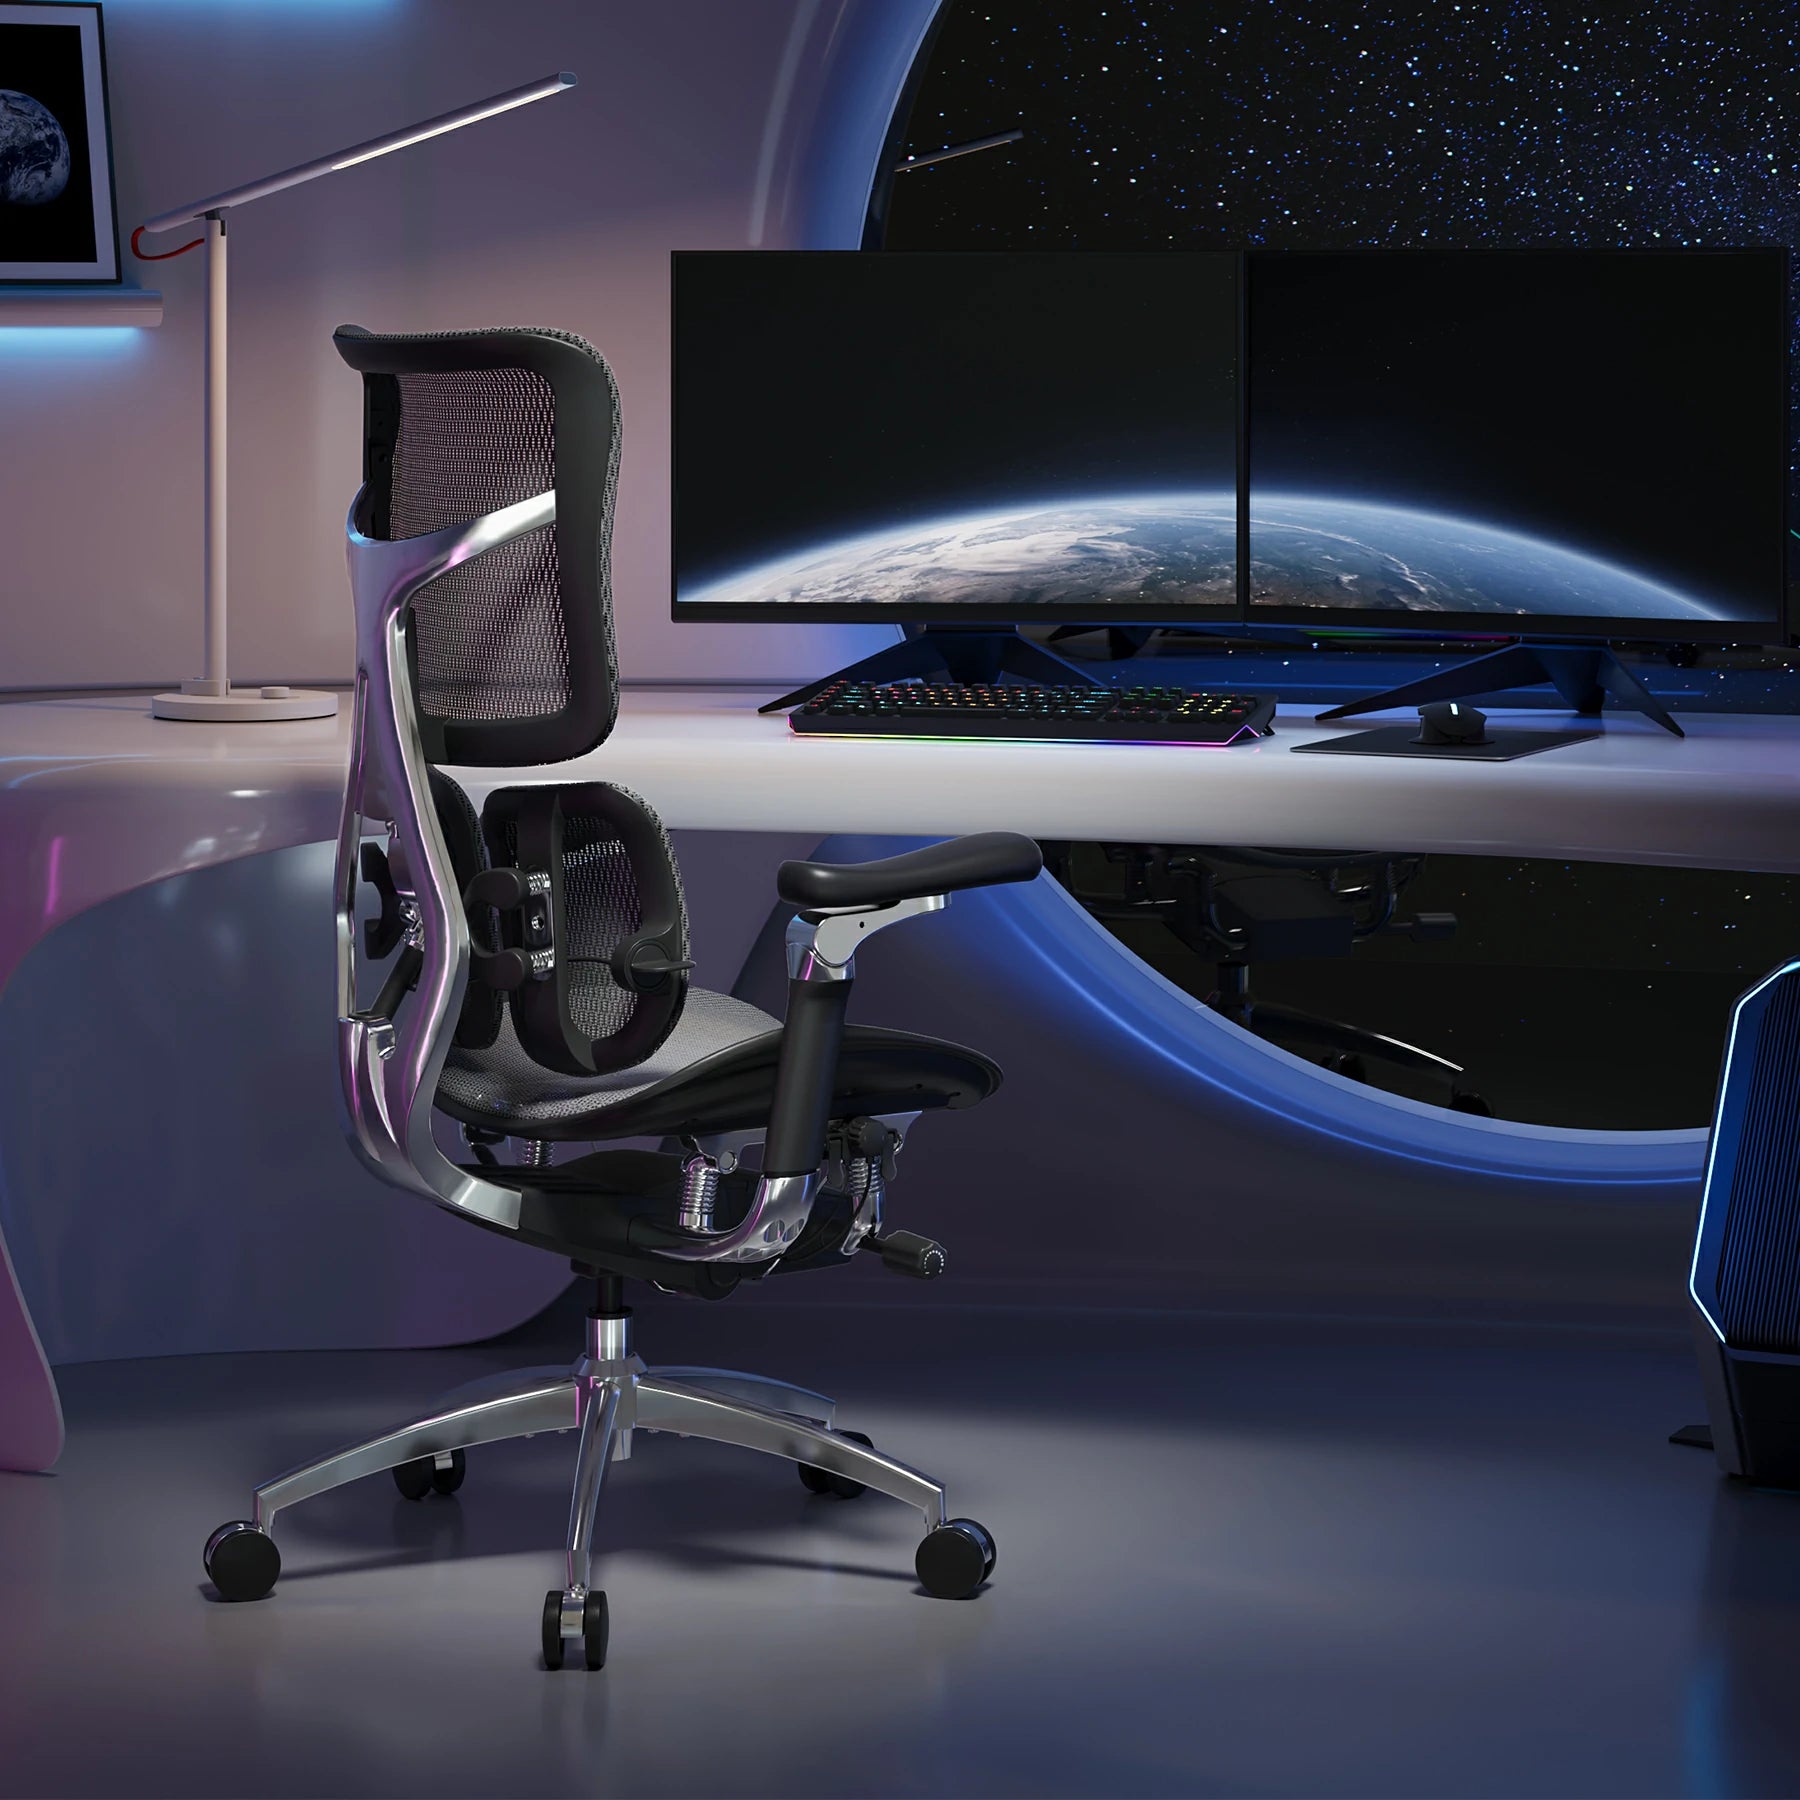 Chaises de bureau ergonomiques Sihoo - M57 et autres modèles  (sihoooffice.com) –